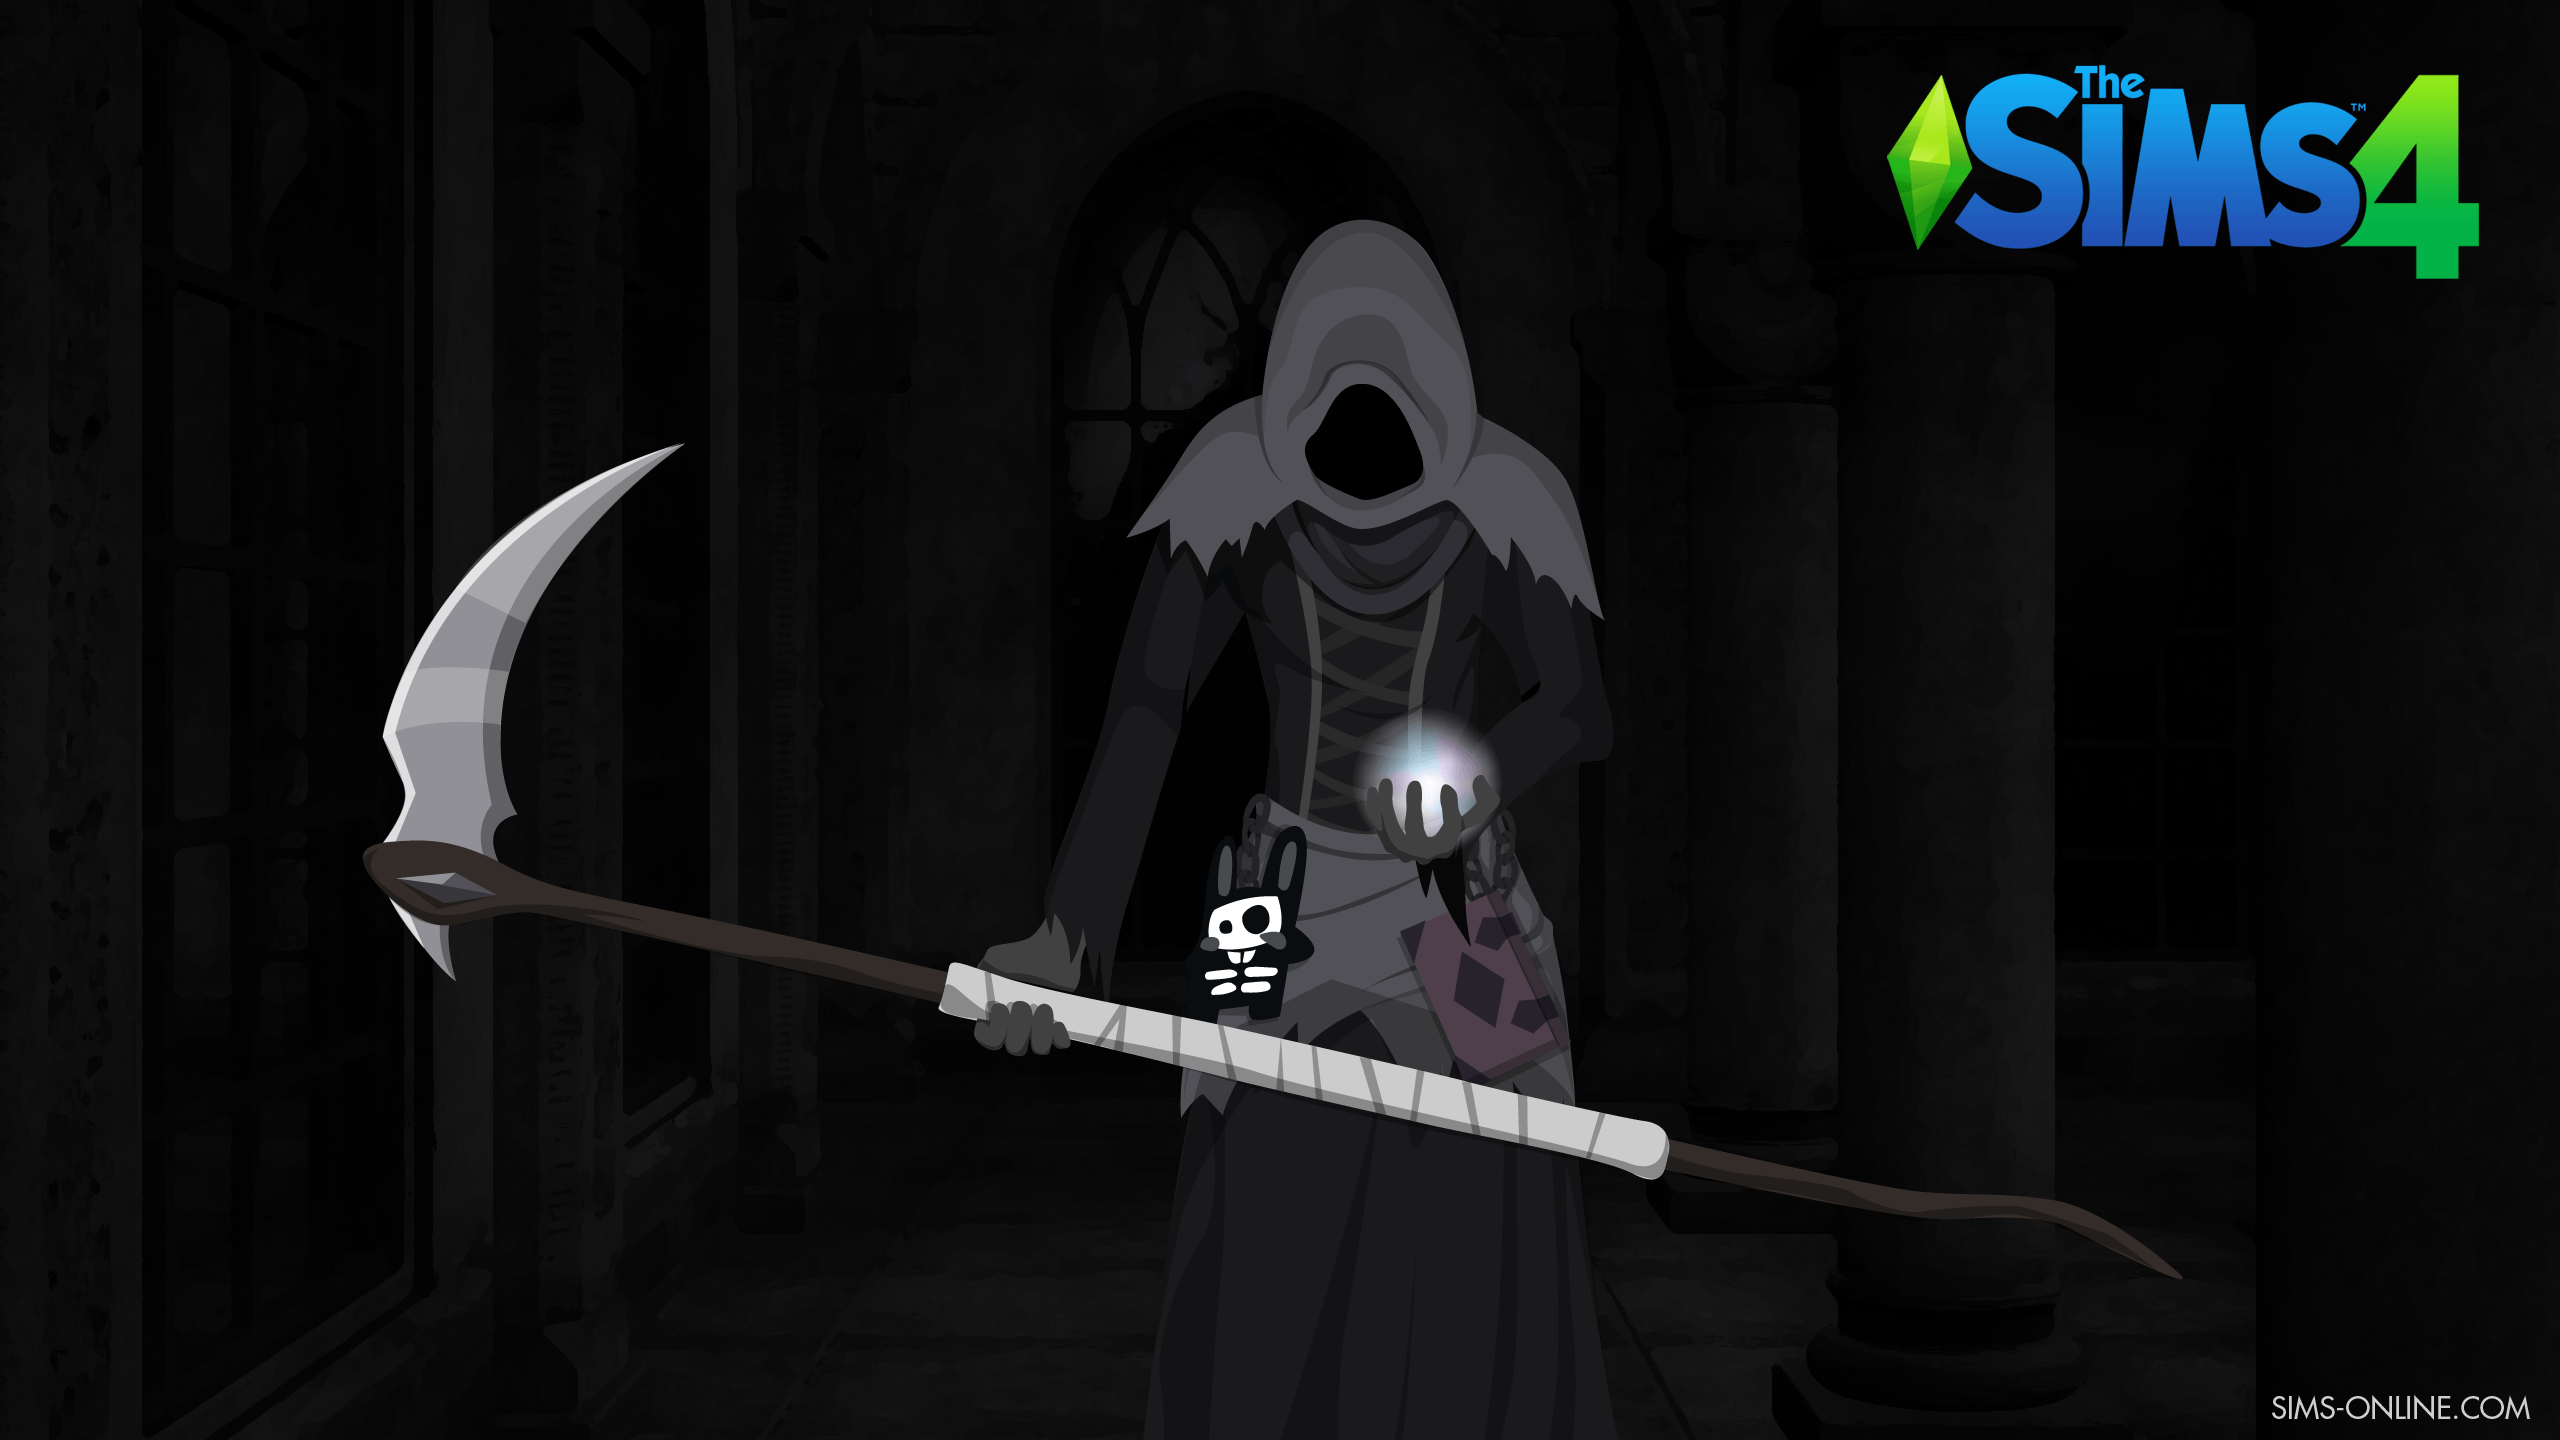 The Sims 4 Grim Reaper Wallpaper